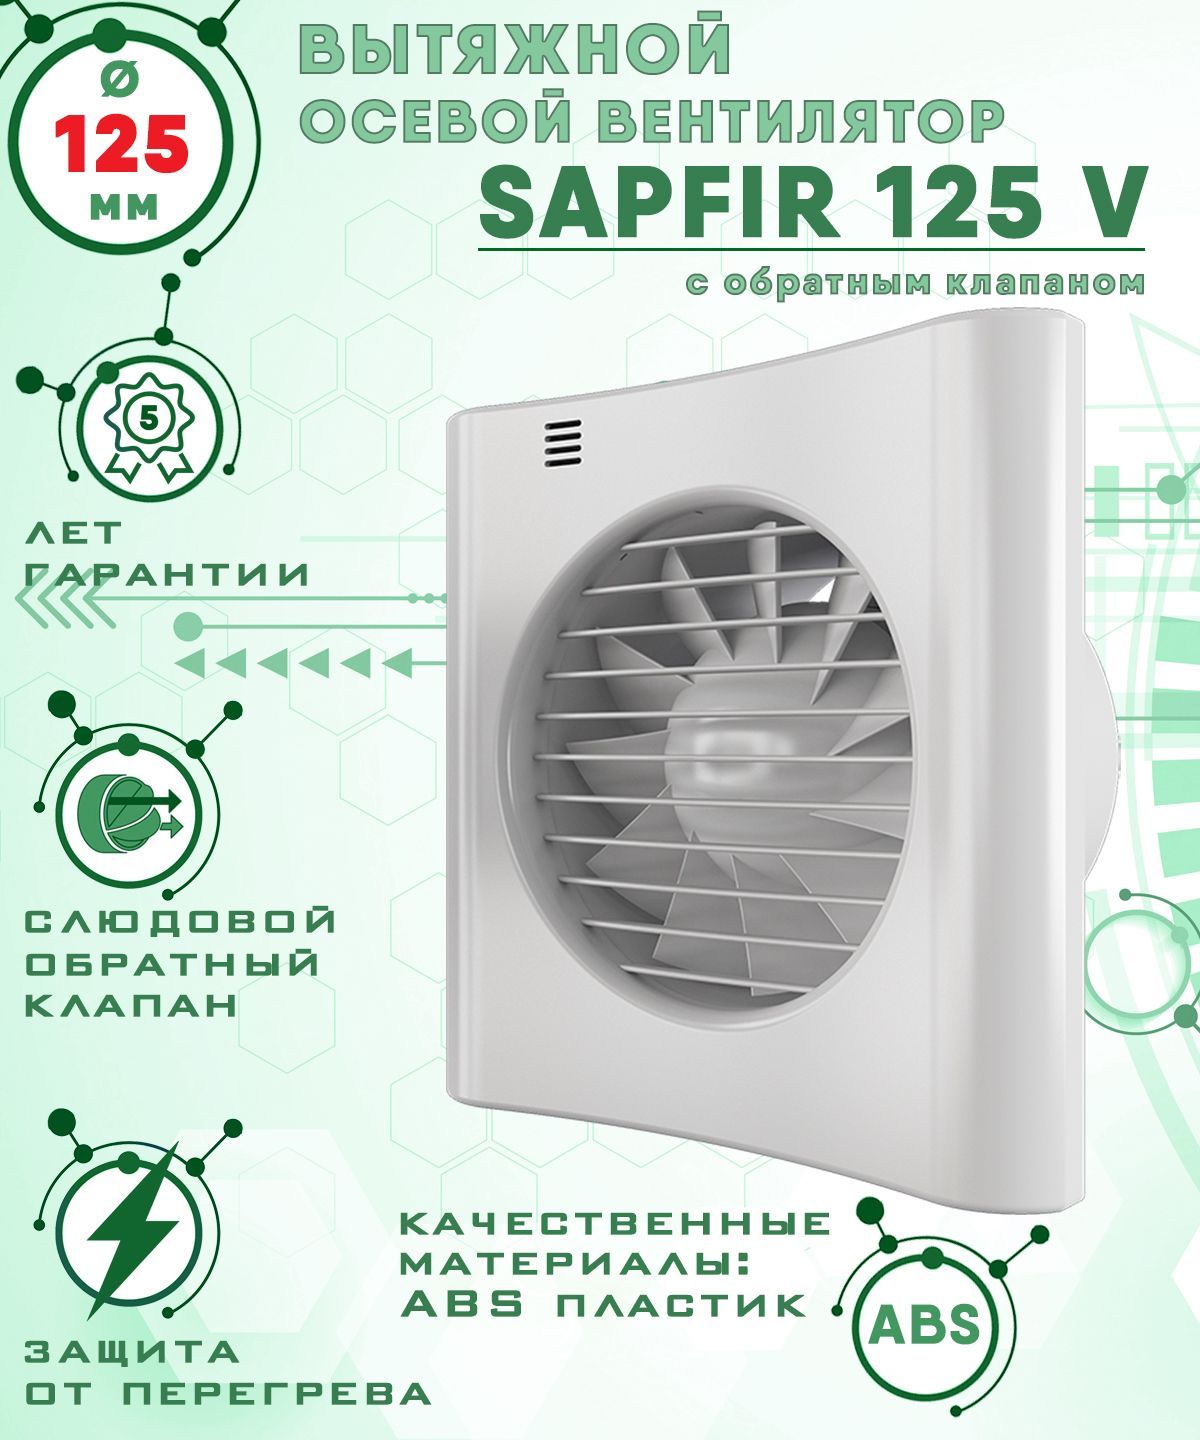 вентилятор с обратным клапаном electrolux Sapfir 125 V вентилятор вытяжной 18 Вт с обратным клапаном диаметр 125 мм ZERNBERG